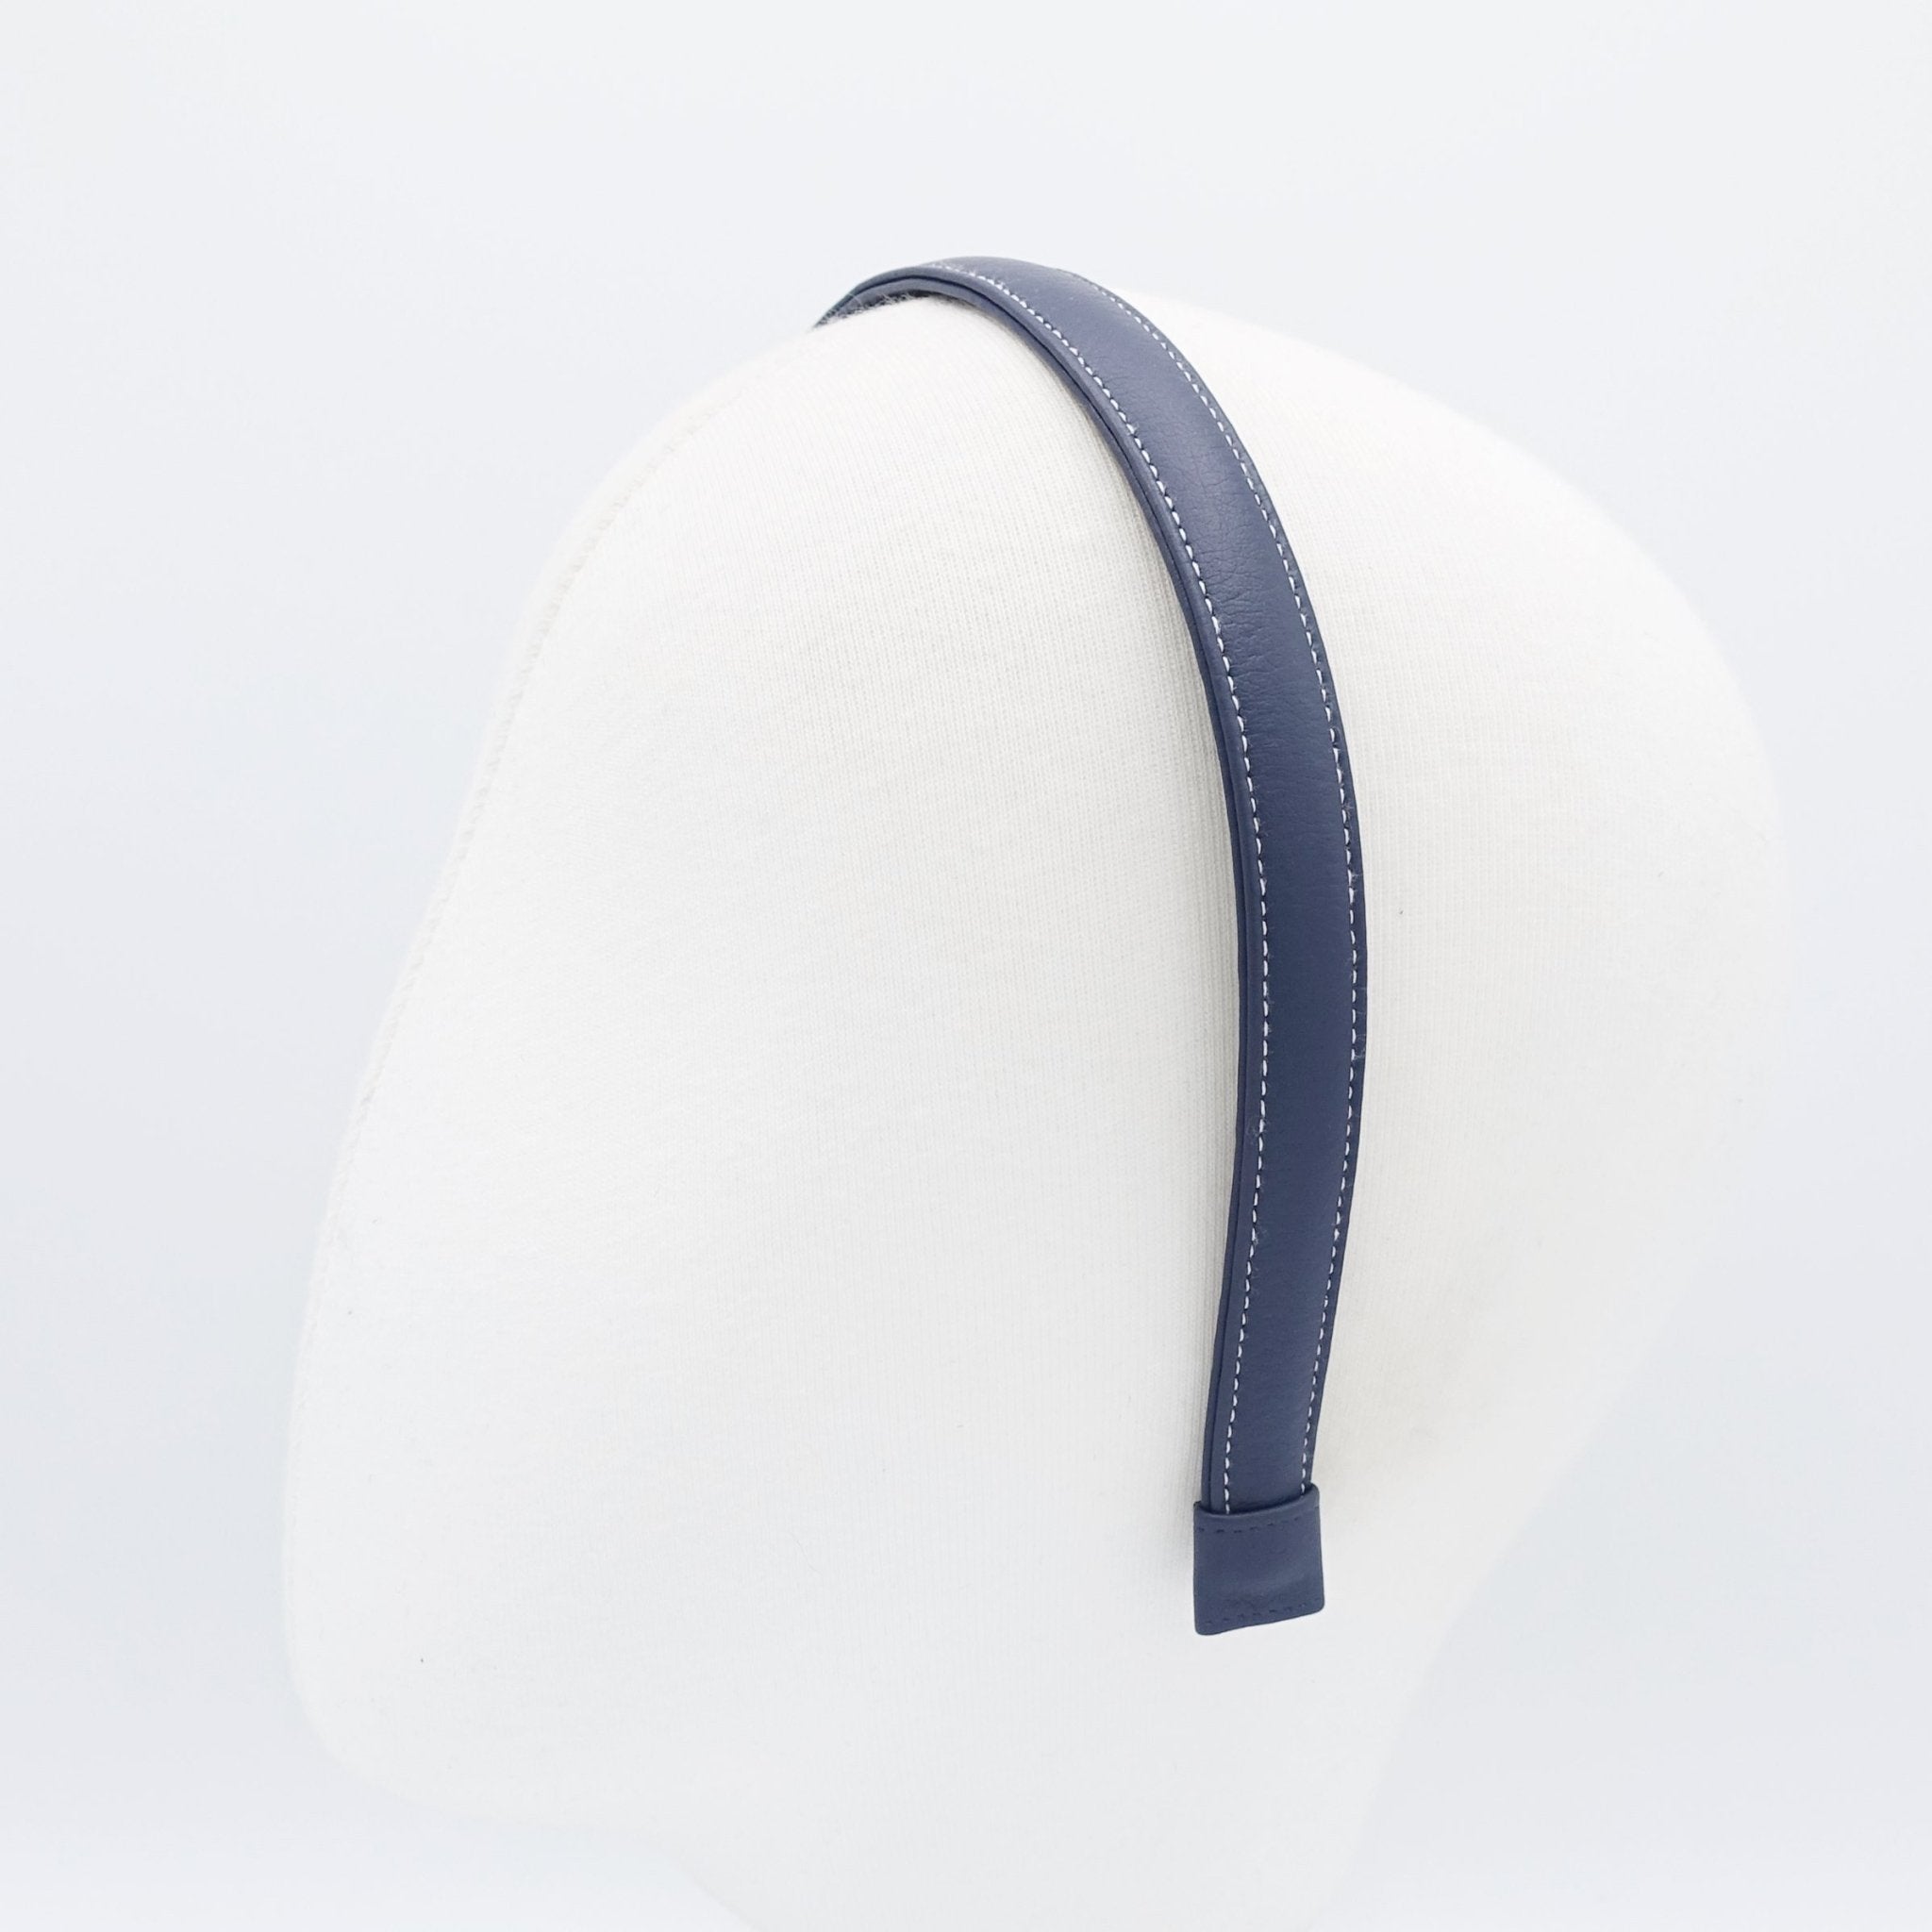 veryshine.com hairband/headband stitch edge leather basic headband women hairband